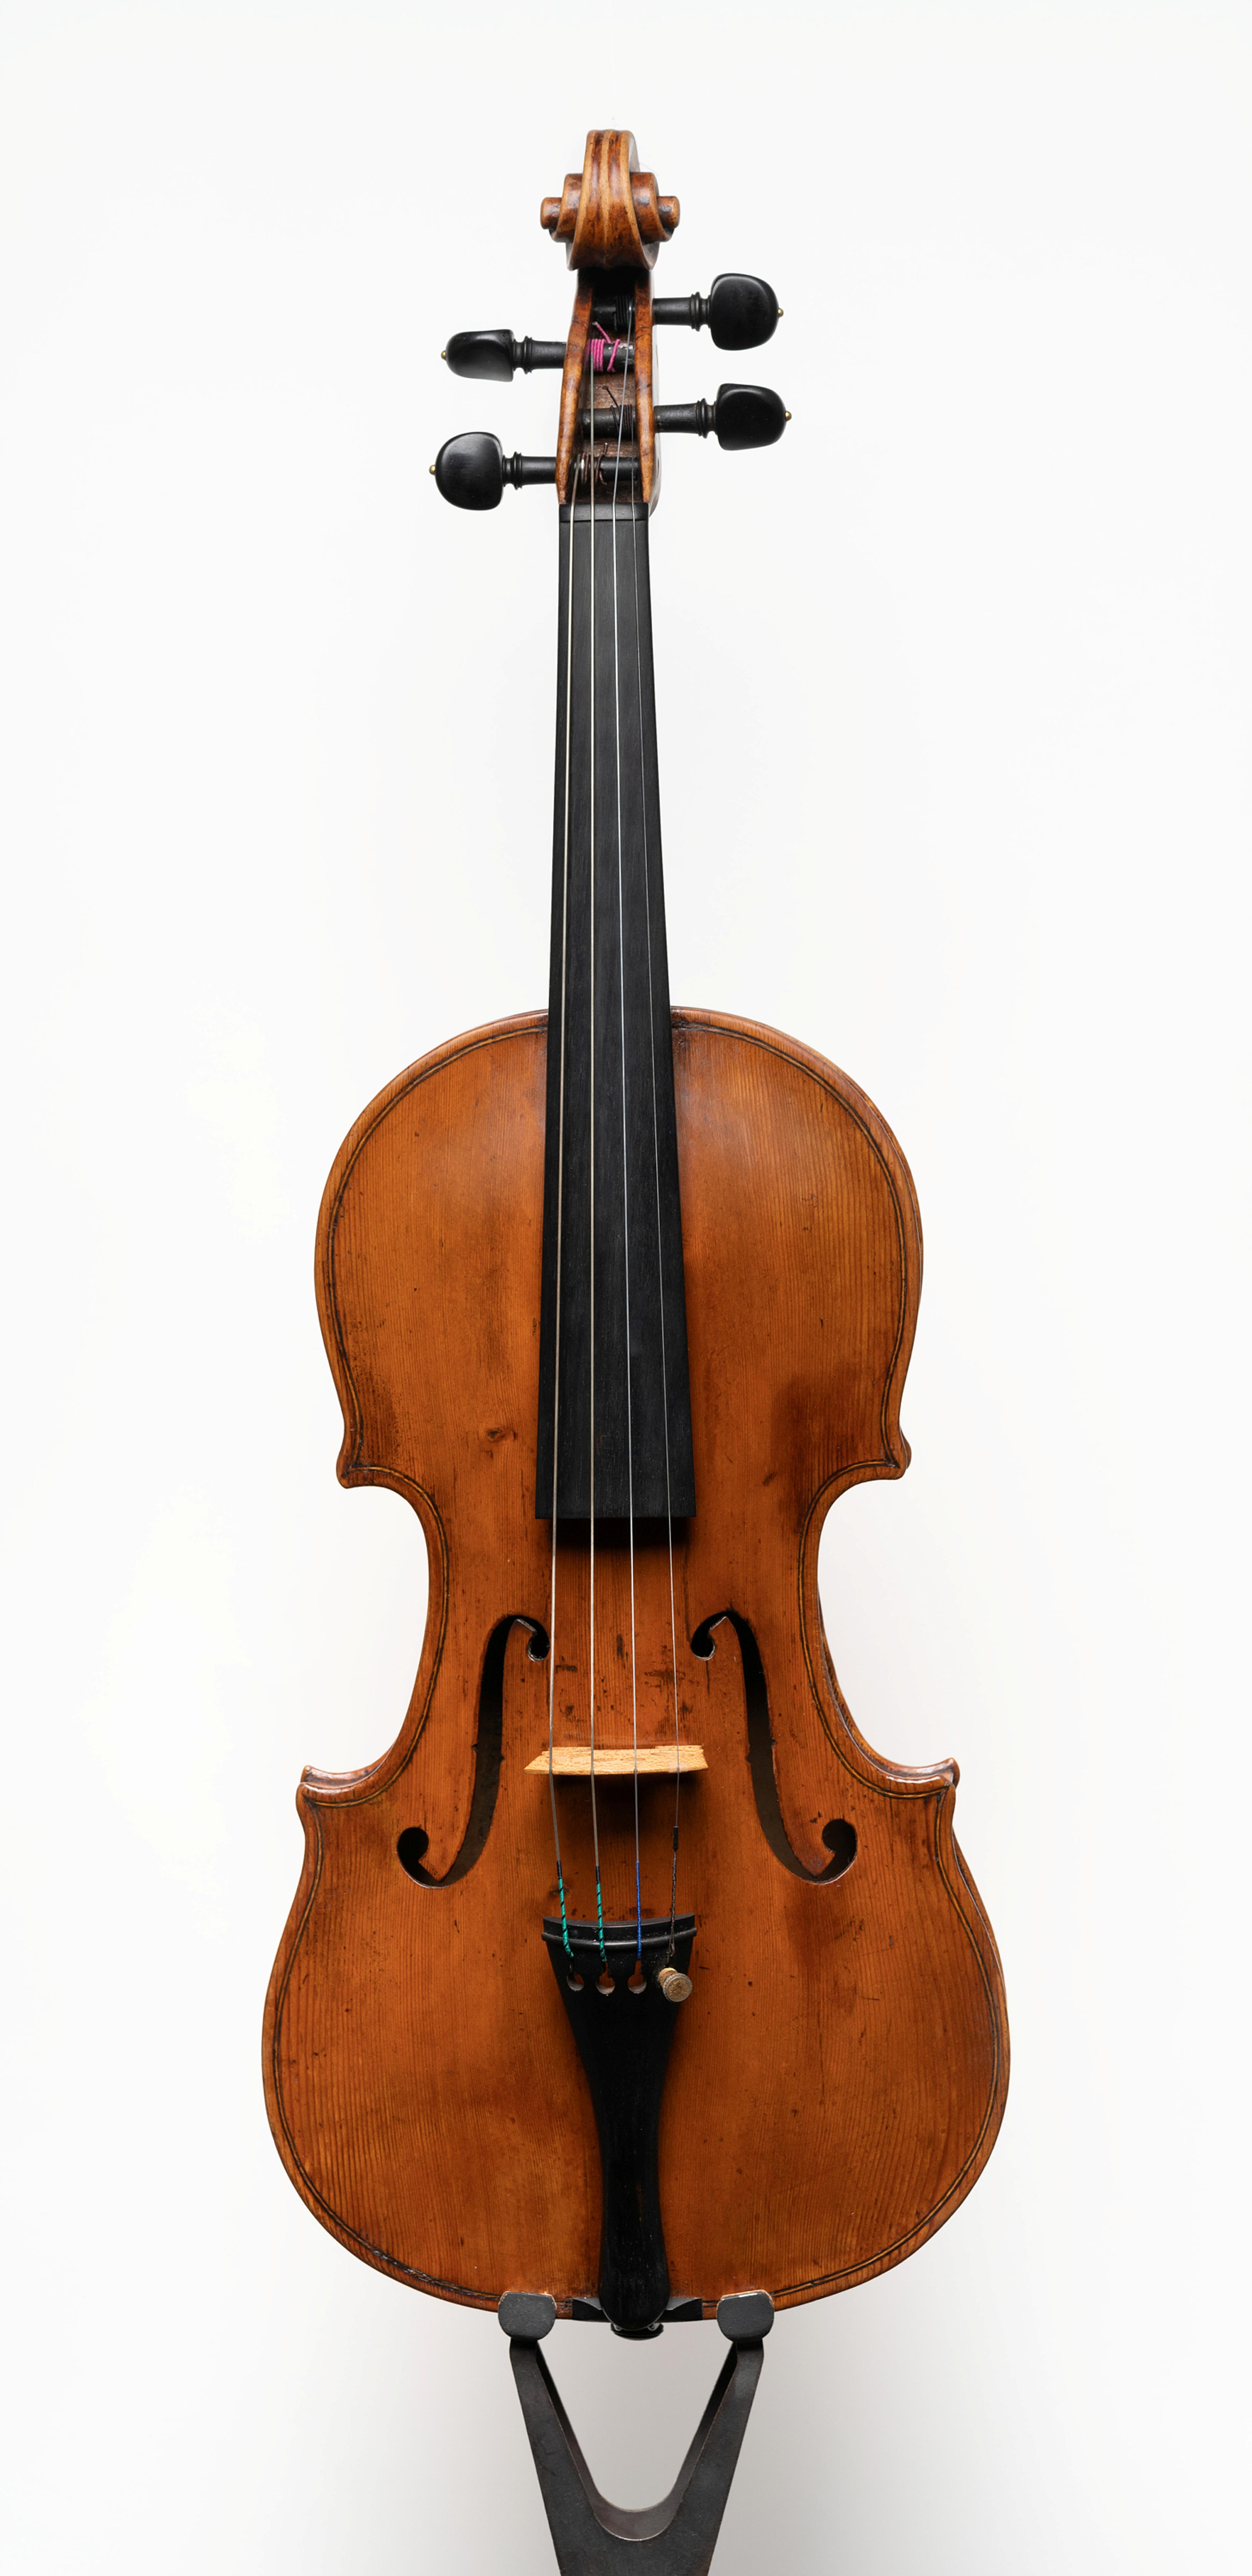 En fiolin tilhørende Ole Bull, avbildet mot hvit bakgrunn.